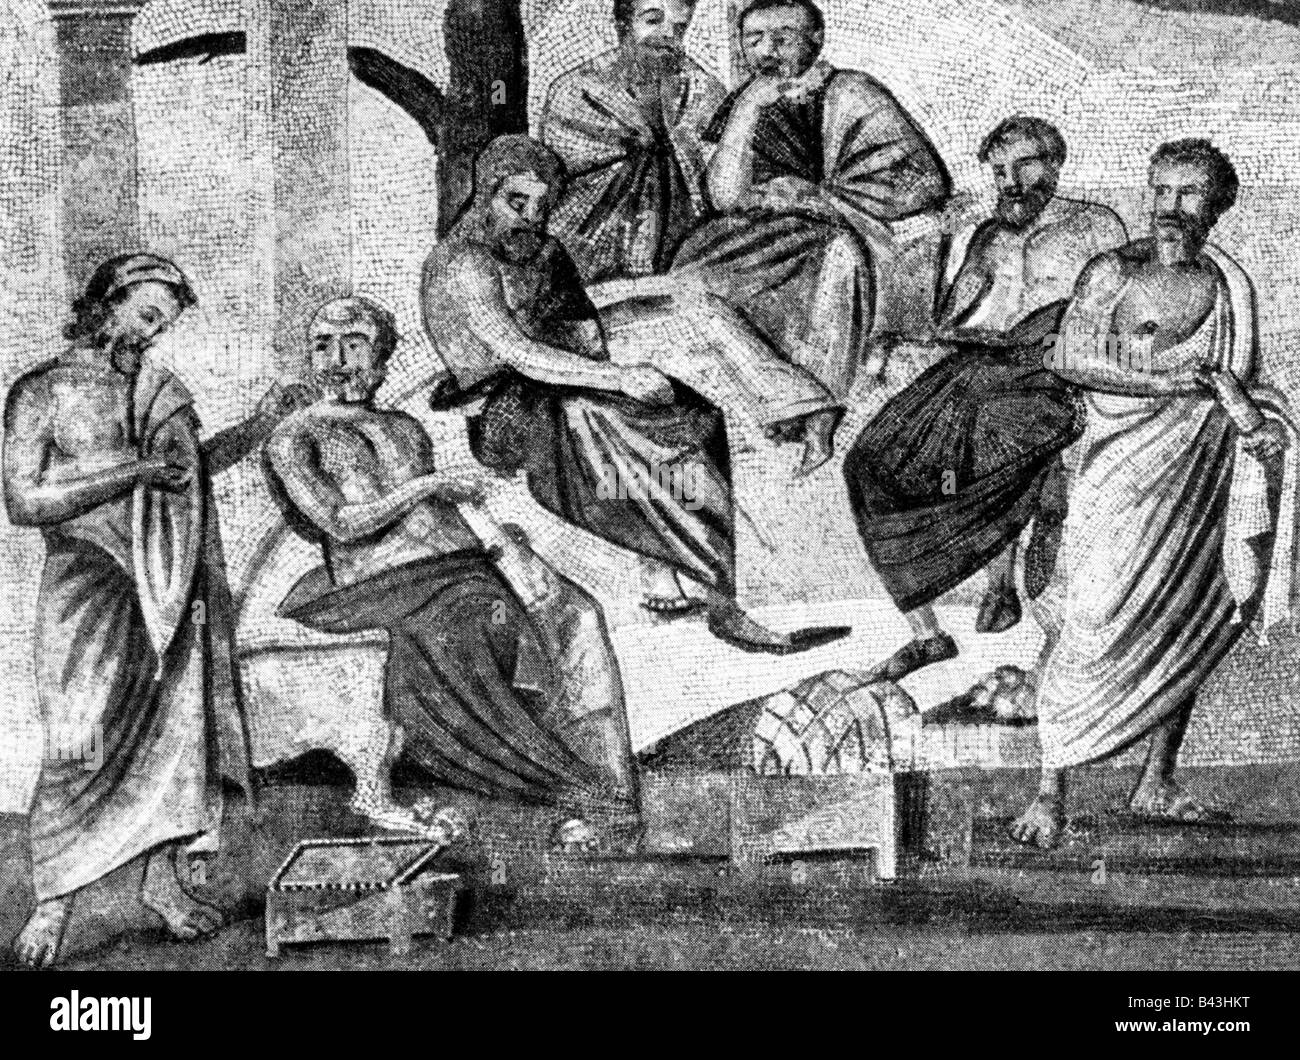 Platon, 427 - 347 v. Chr., der griechische Philosoph, mit seinen Studenten, nach altem Mosaik aus Pompeji, Nationalmuseum Neapel, Italien, Stockfoto